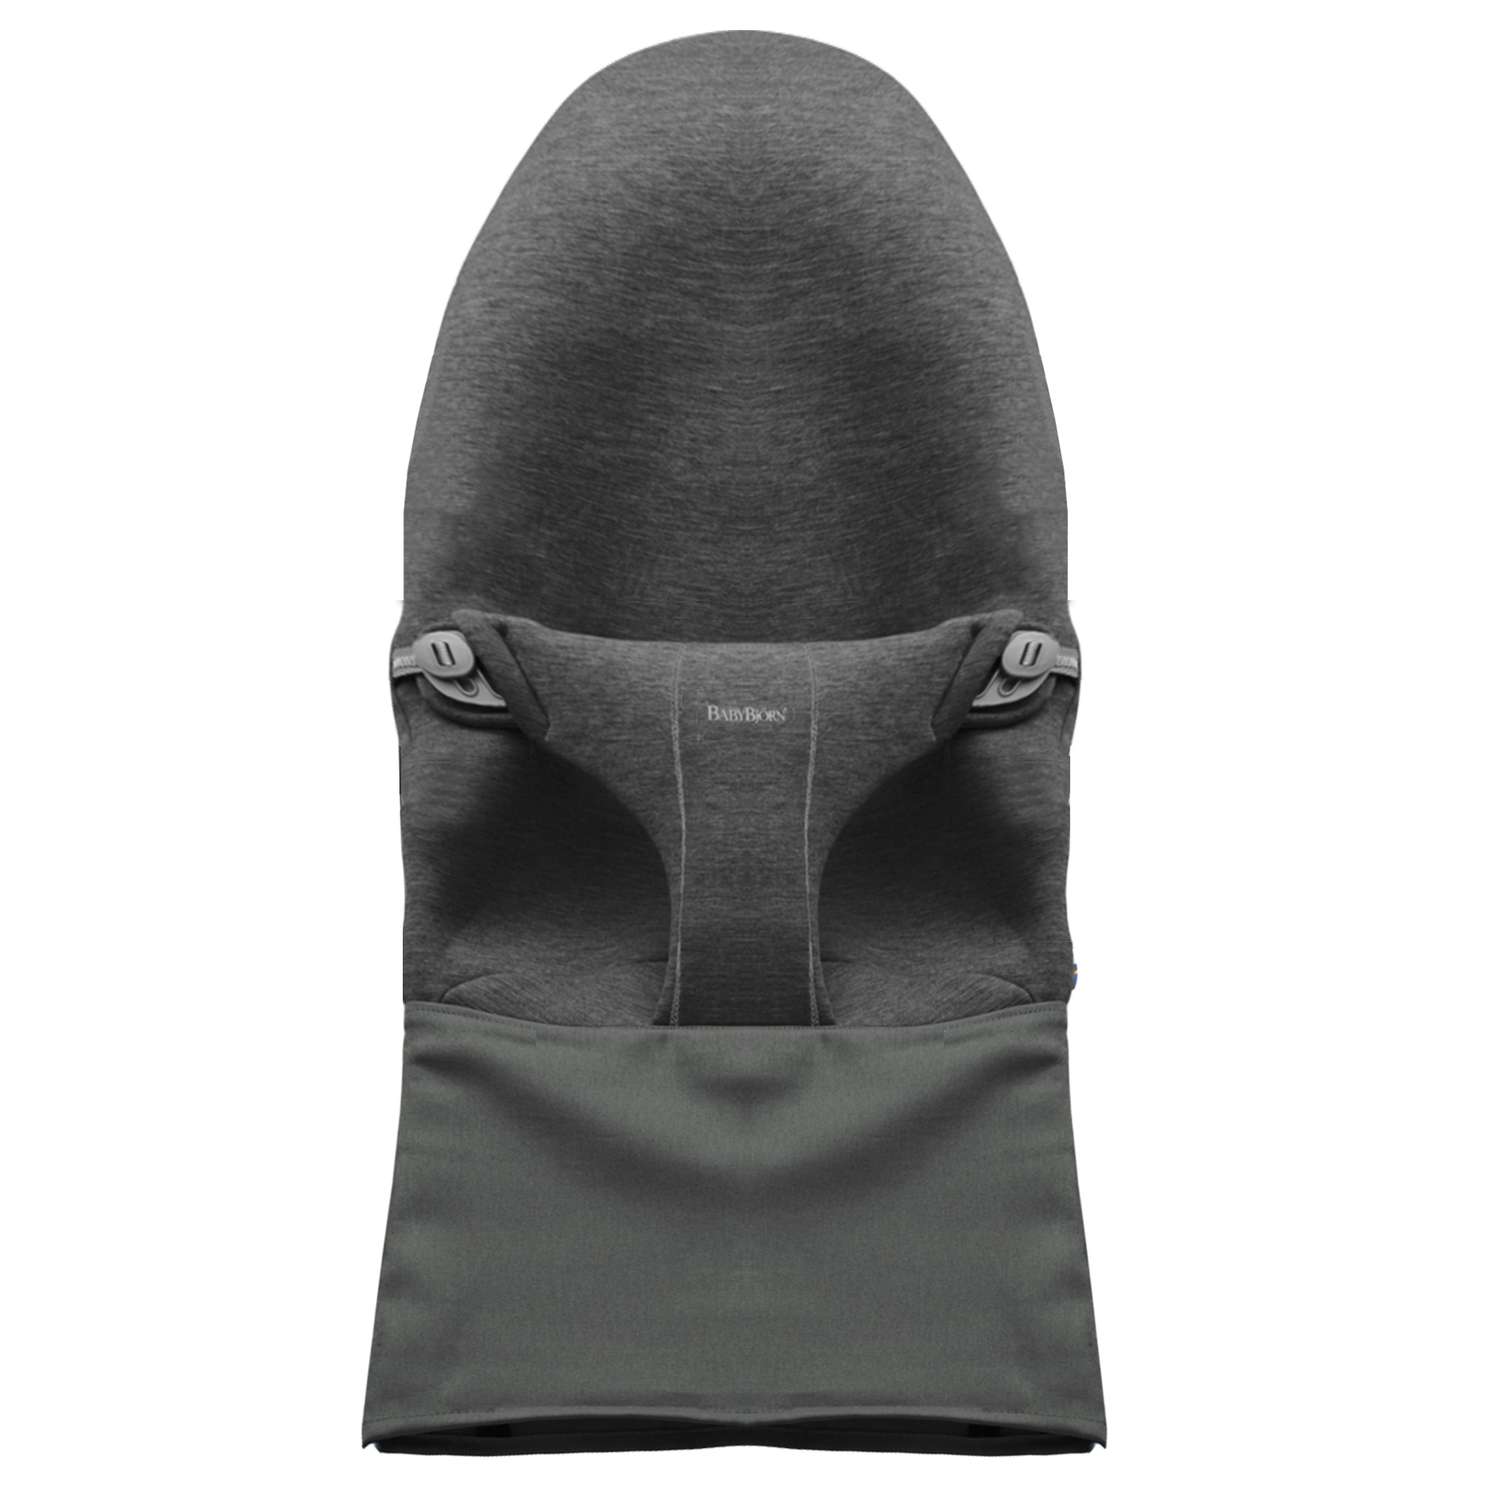 Чехол для кресла-шезлонга BabyBjorn Fabric Seat Bouncer Bliss Jersey сменный Темно-серый - фото 1